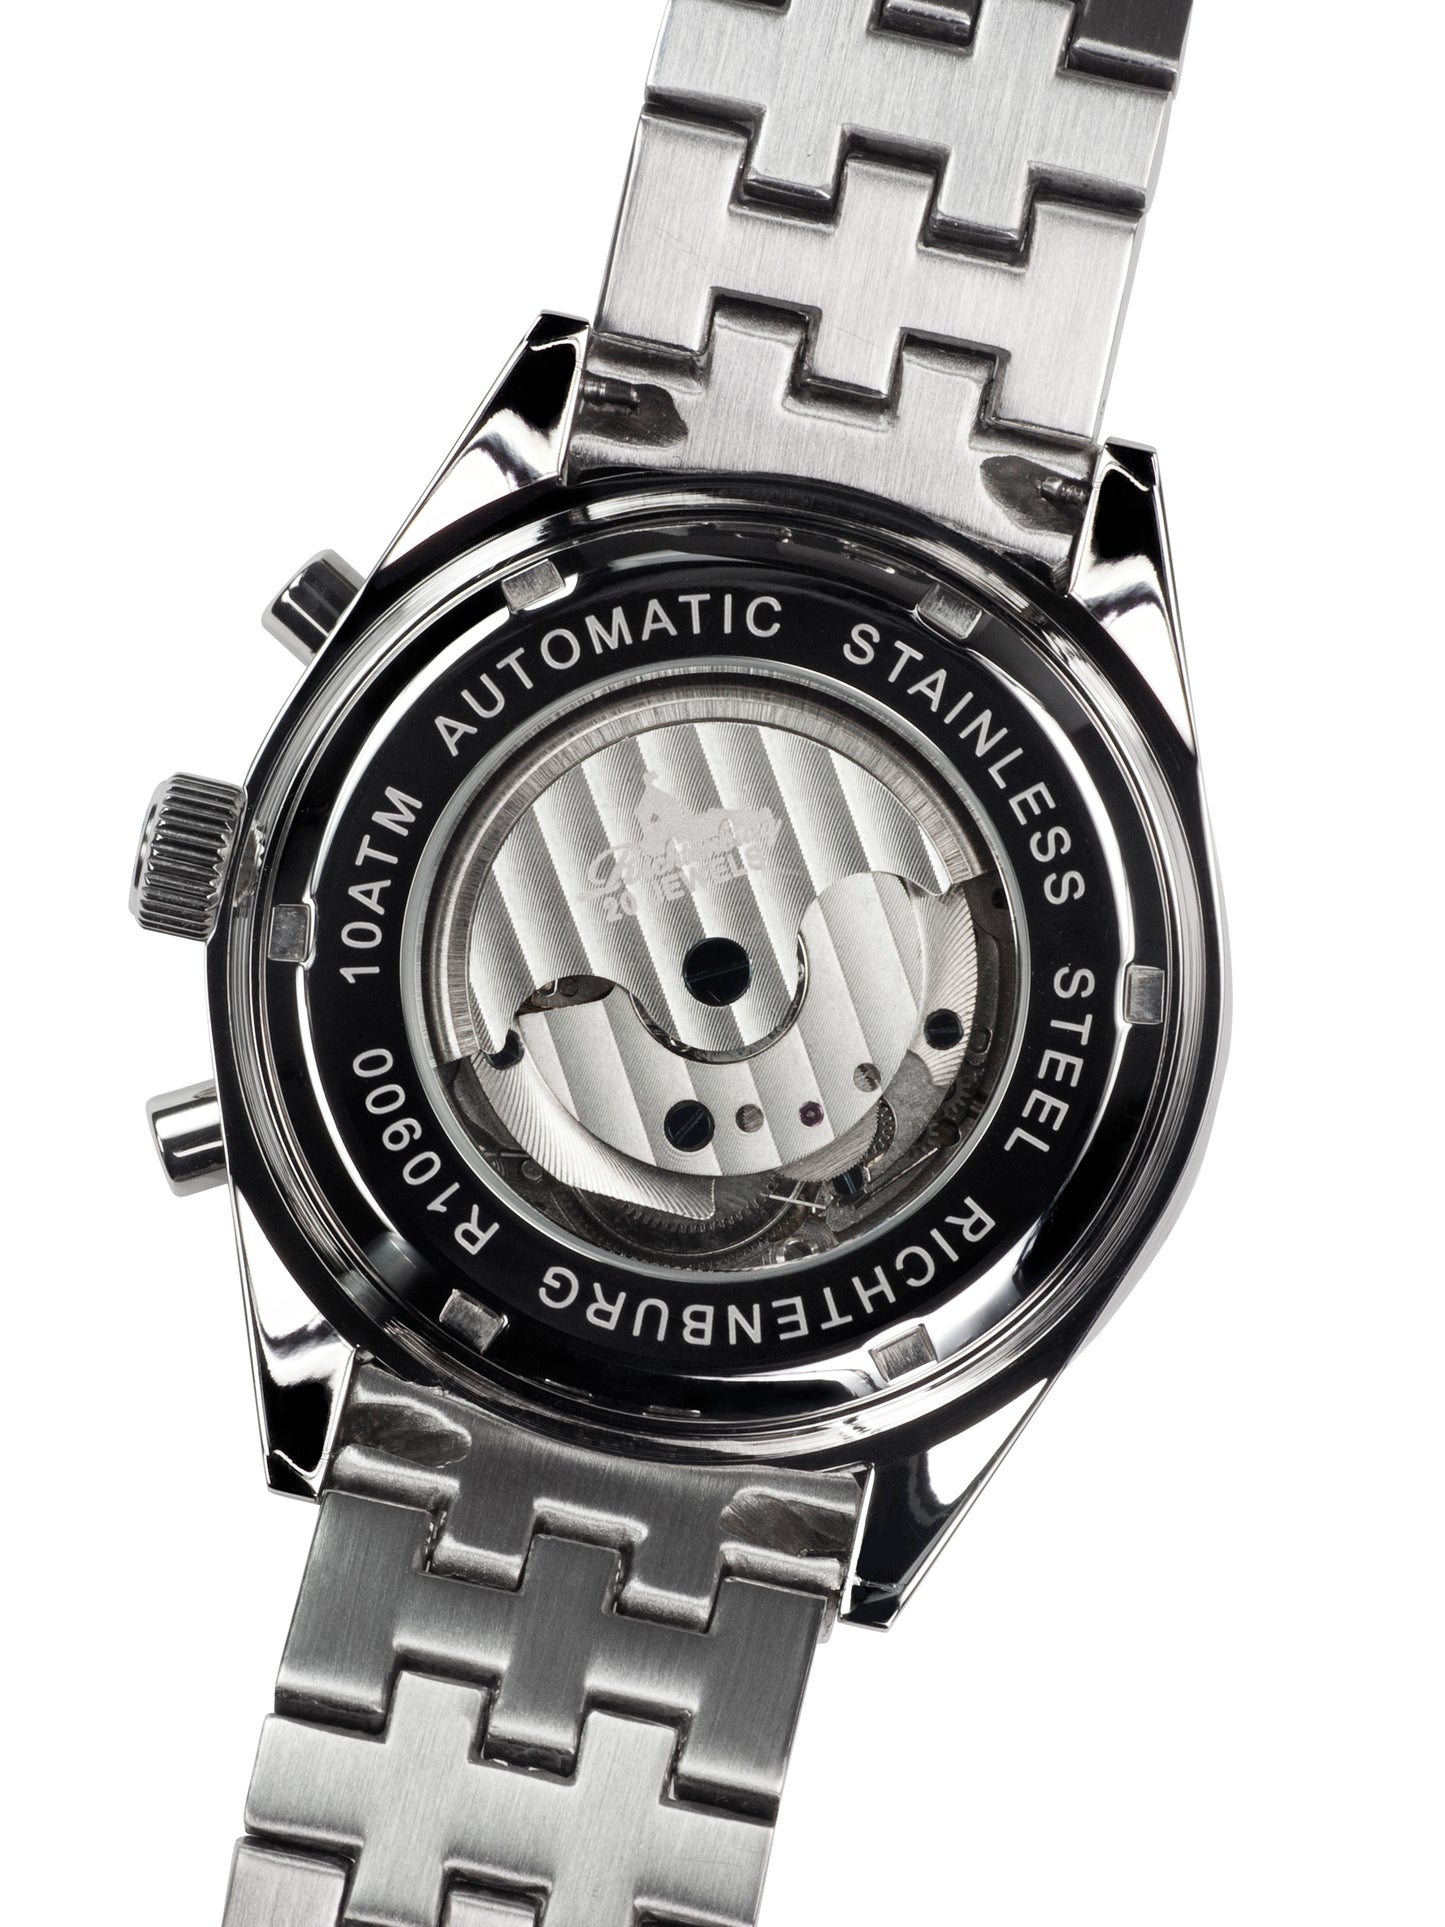 Automatic watches — Stahlfighter — Richtenburg — black